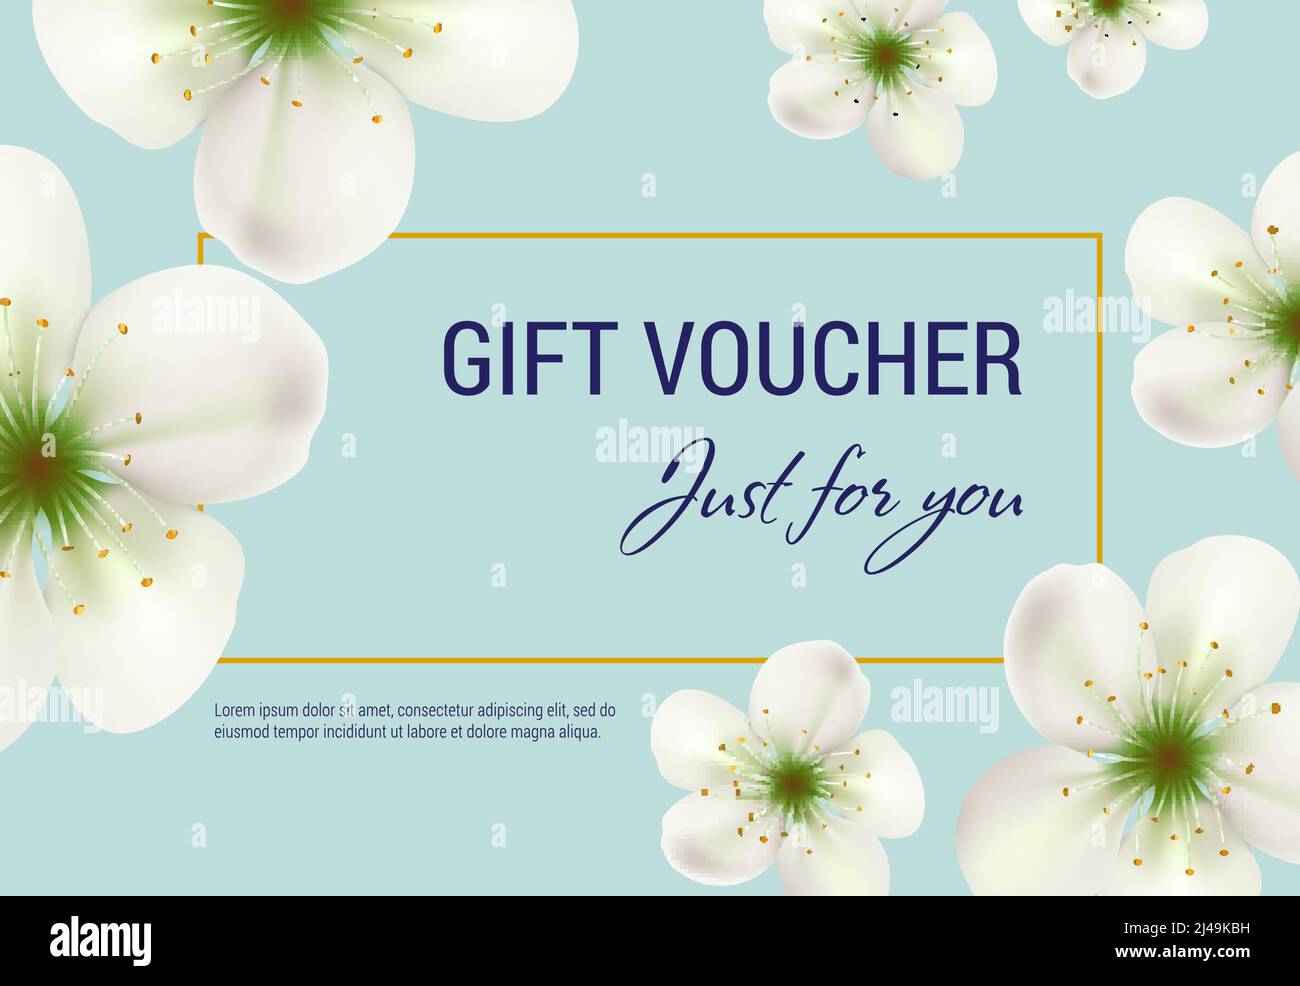 Solo per voi regalo voucher design con fiori bianchi e cornice su sfondo  blu chiaro. Il testo può essere utilizzato per coupon, certificati,  volantini Immagine e Vettoriale - Alamy